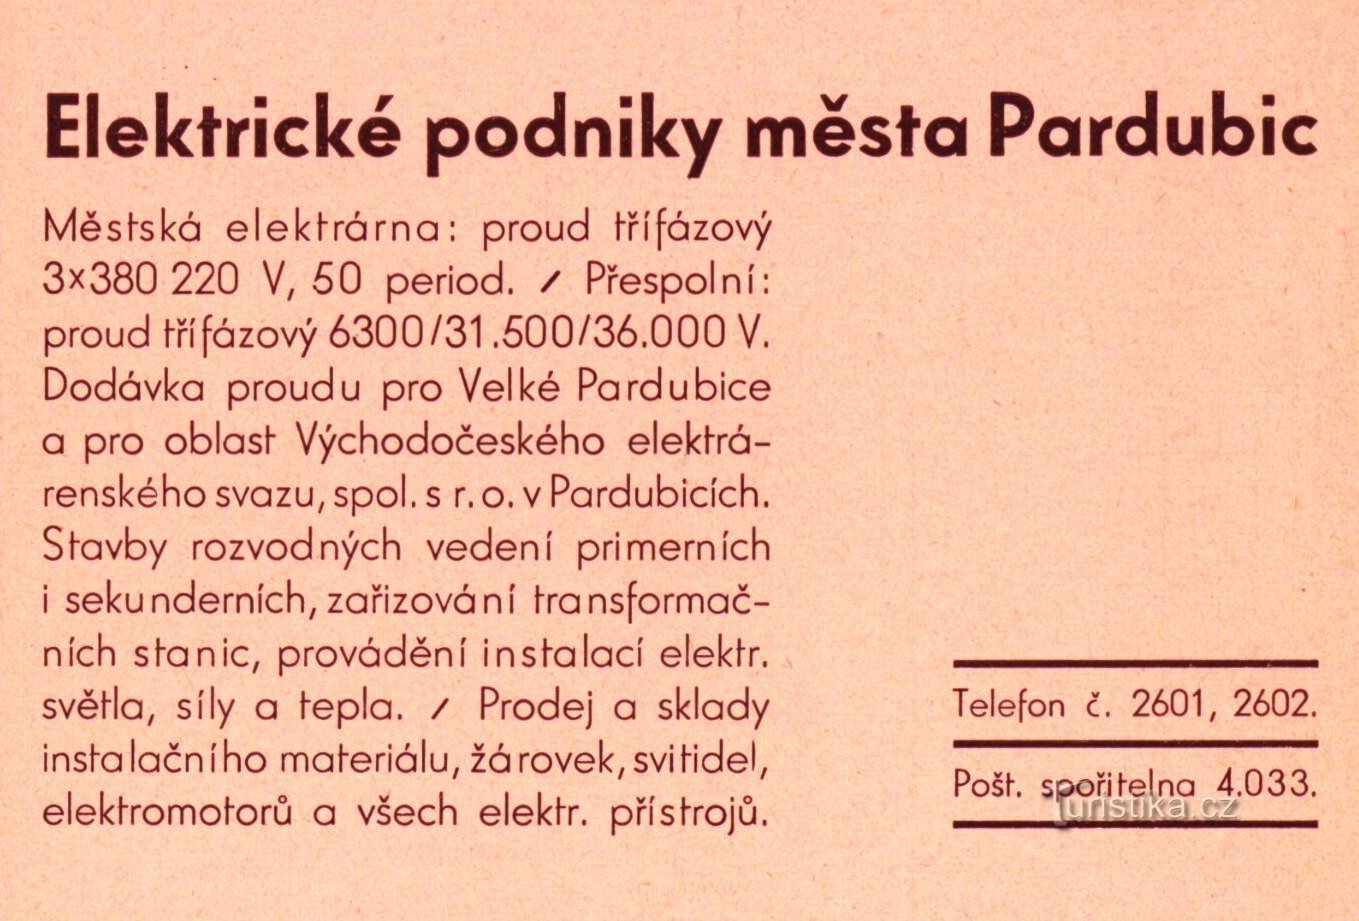 Зробіть рекламу електричних компаній міста Пардубіце з 1936 року